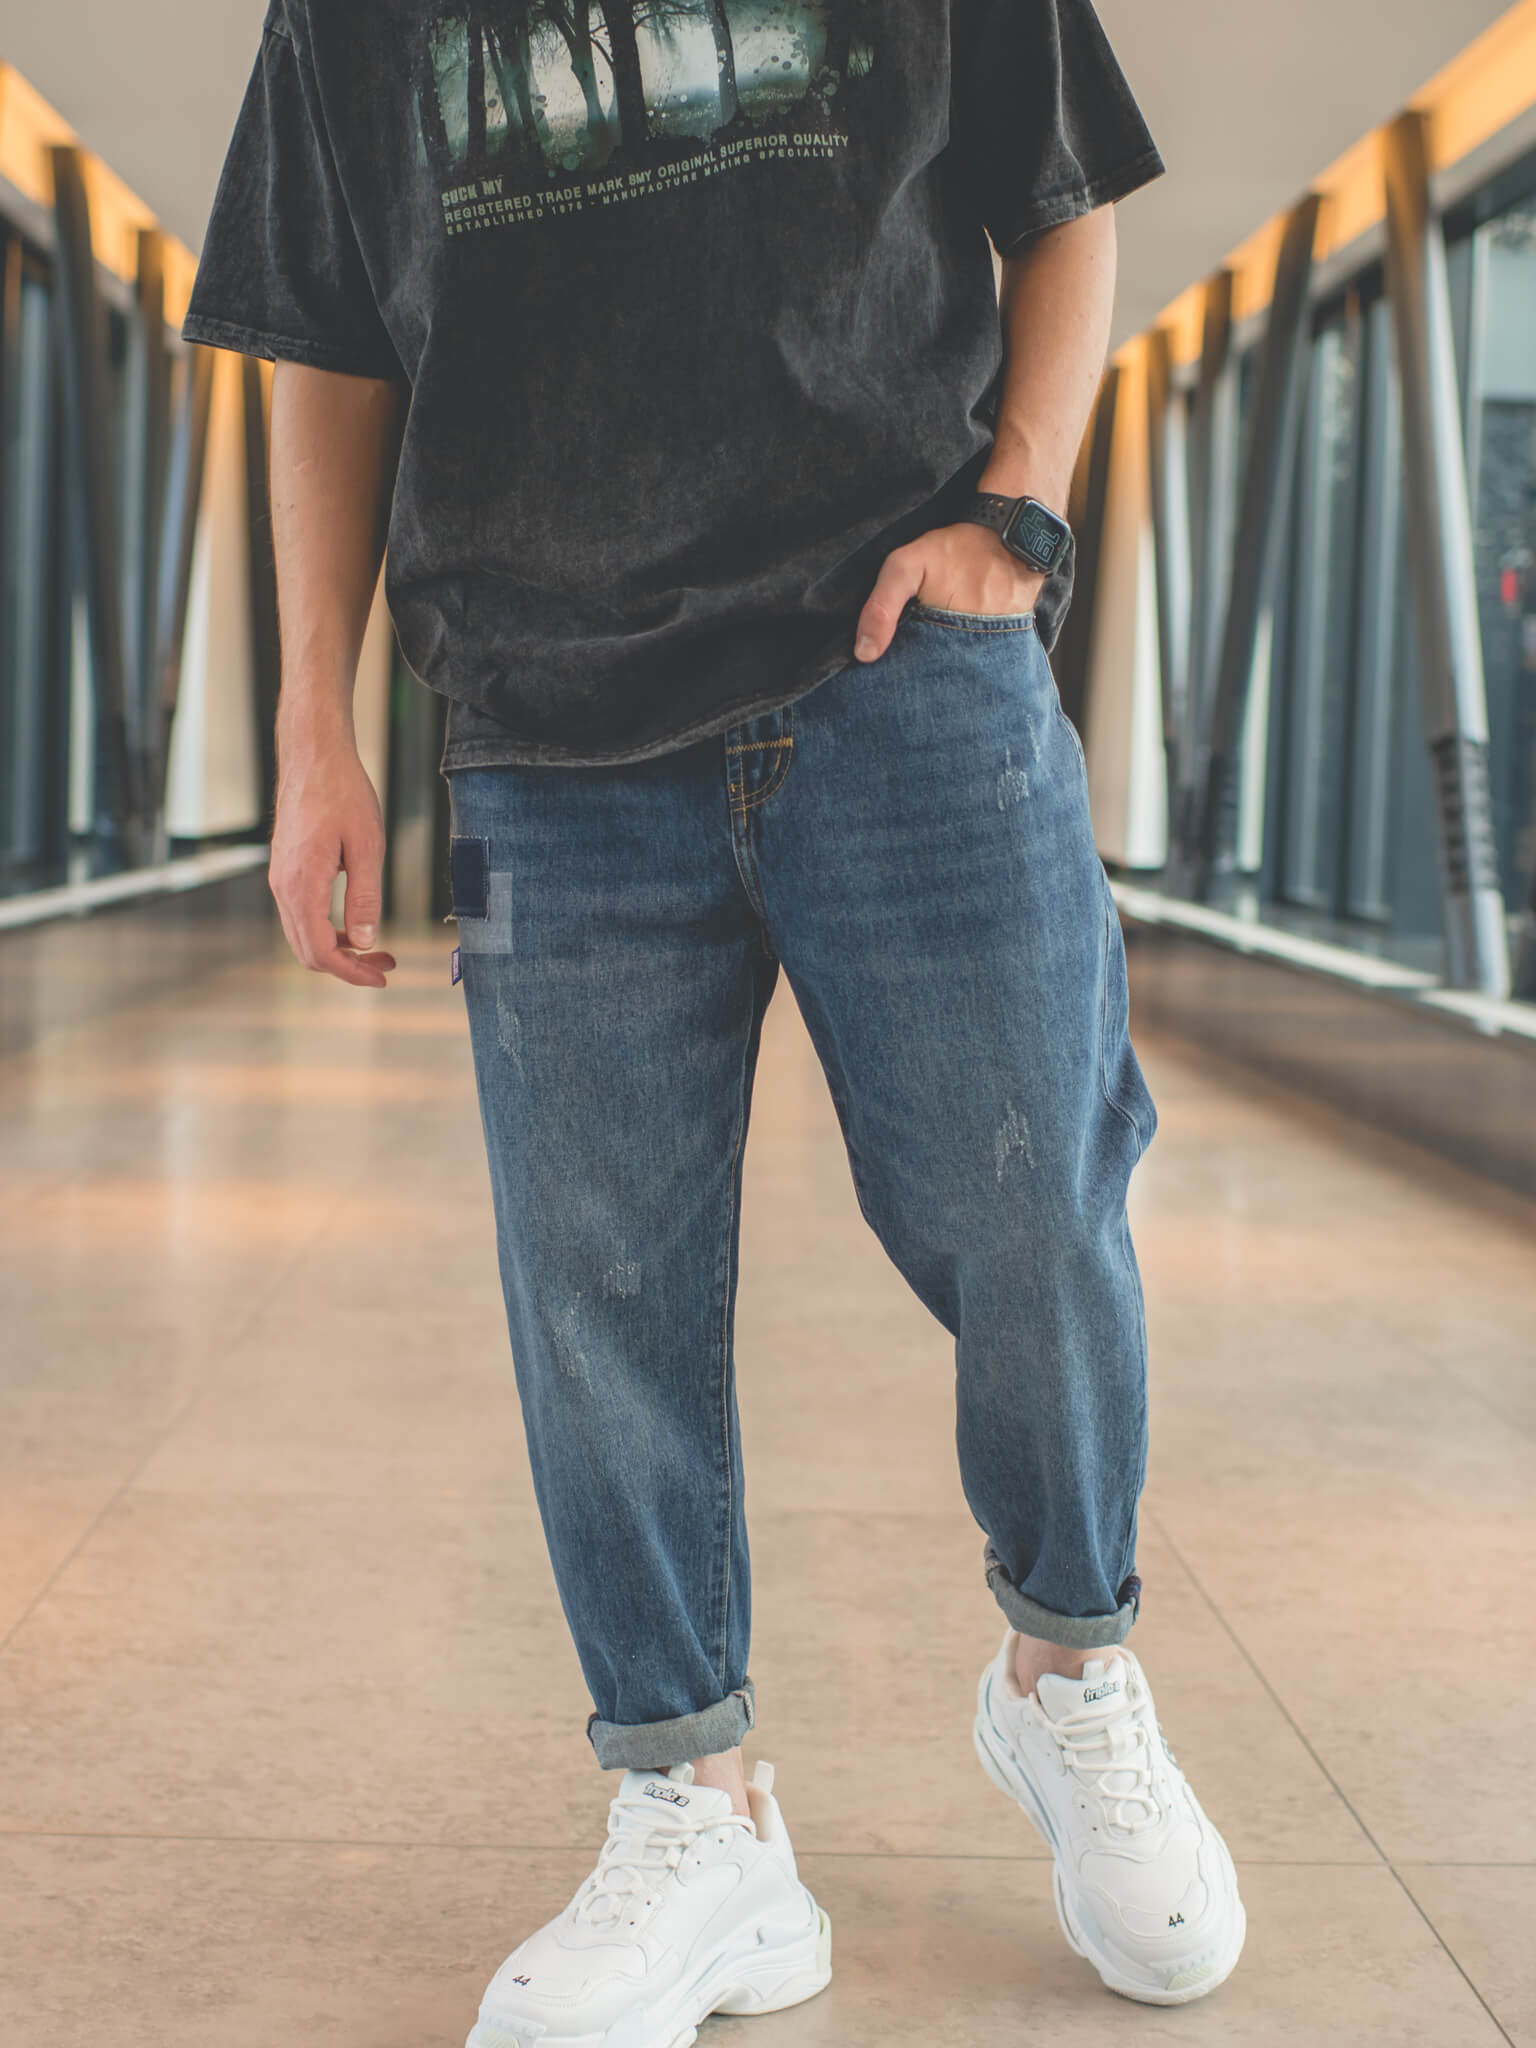 Что носить с джинсами: создаём стильный look в тренде